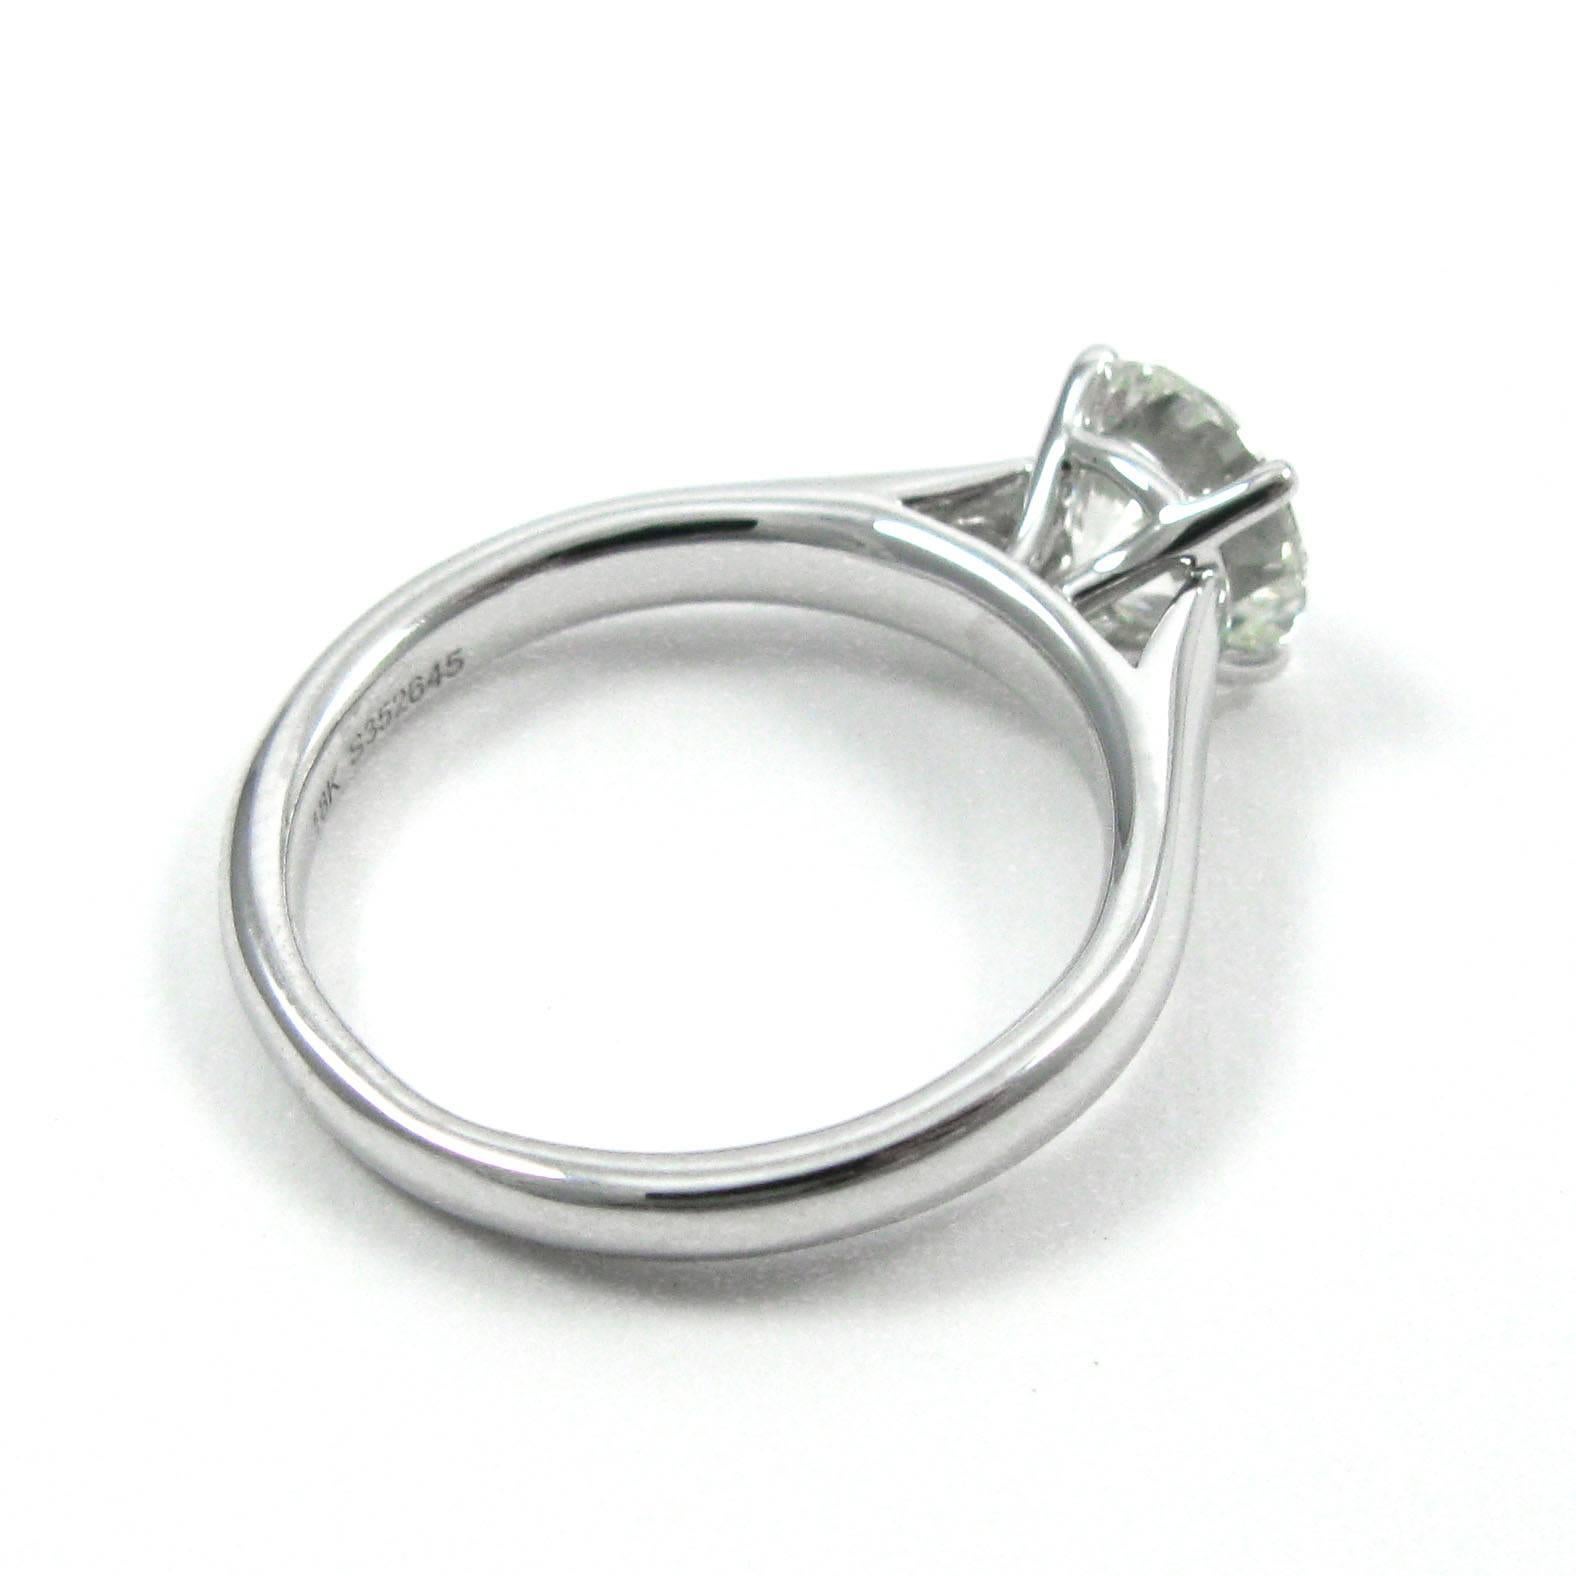 1.22 carat diamond ring price